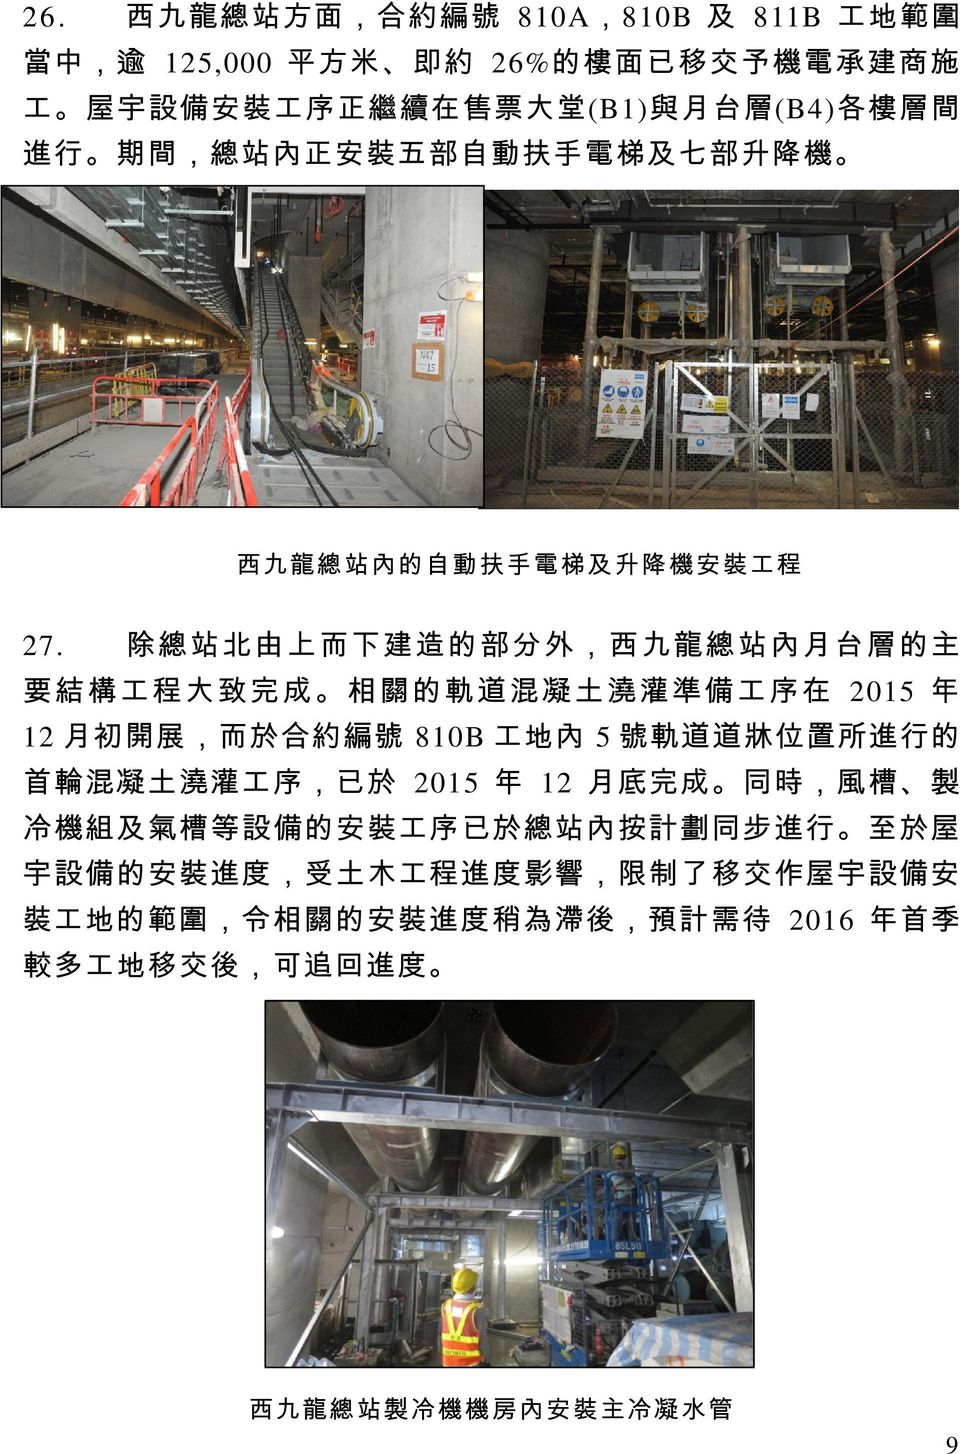 除 總 站 北 由 上 而 下 建 造 的 部 分 外 西 九 龍 總 站 內 月 台 層 的主 要 結 構 工 程 大 致 完 成 相 關 的 軌 道 混 凝 土 澆 灌 準 備 工 序 在 2015 年 12 月初開展